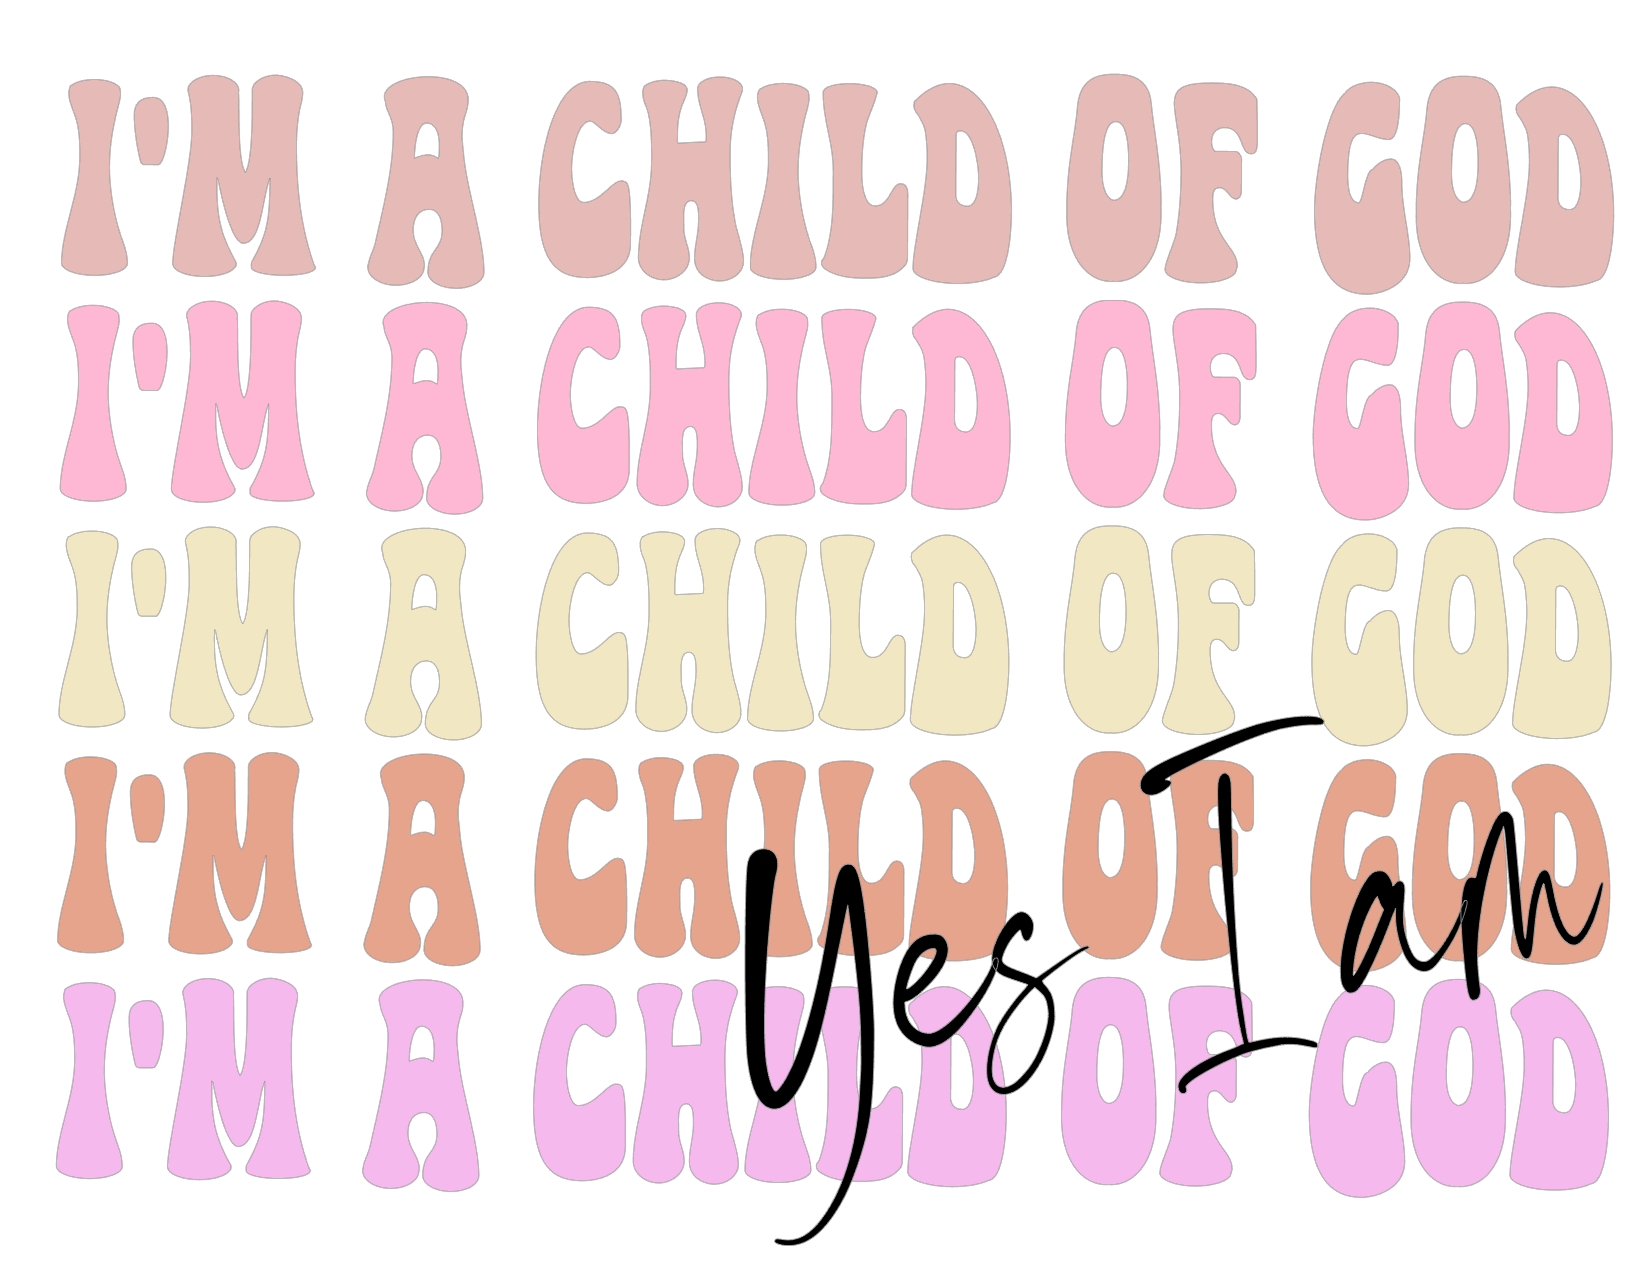 #28 Child of God Yes I am (pinks)